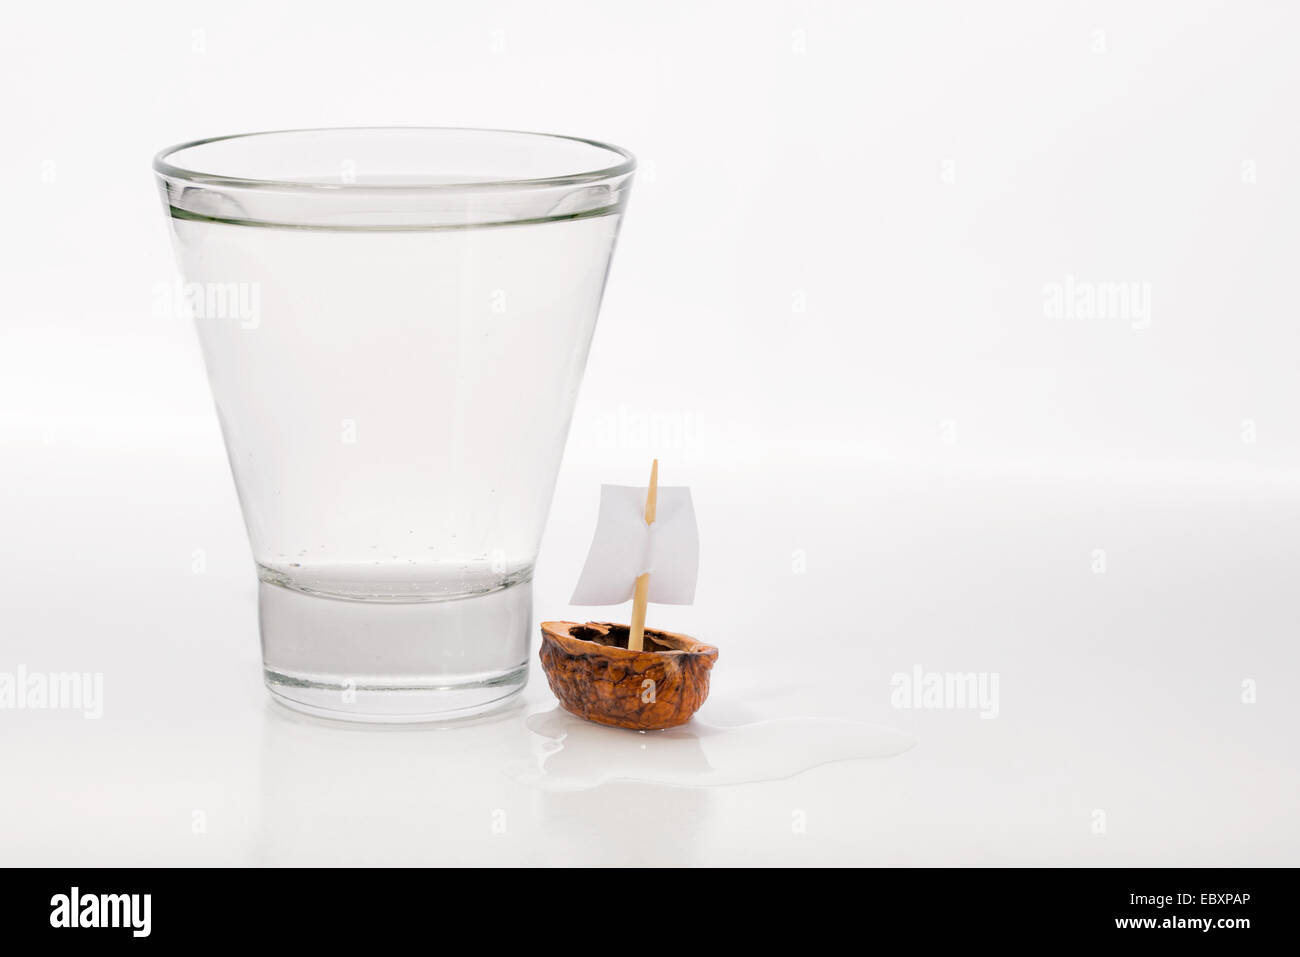 Libre d'une coquille de noix avec une voile de bateau, près d'un verre transparent rempli d'eau ou d'alcool. Banque D'Images